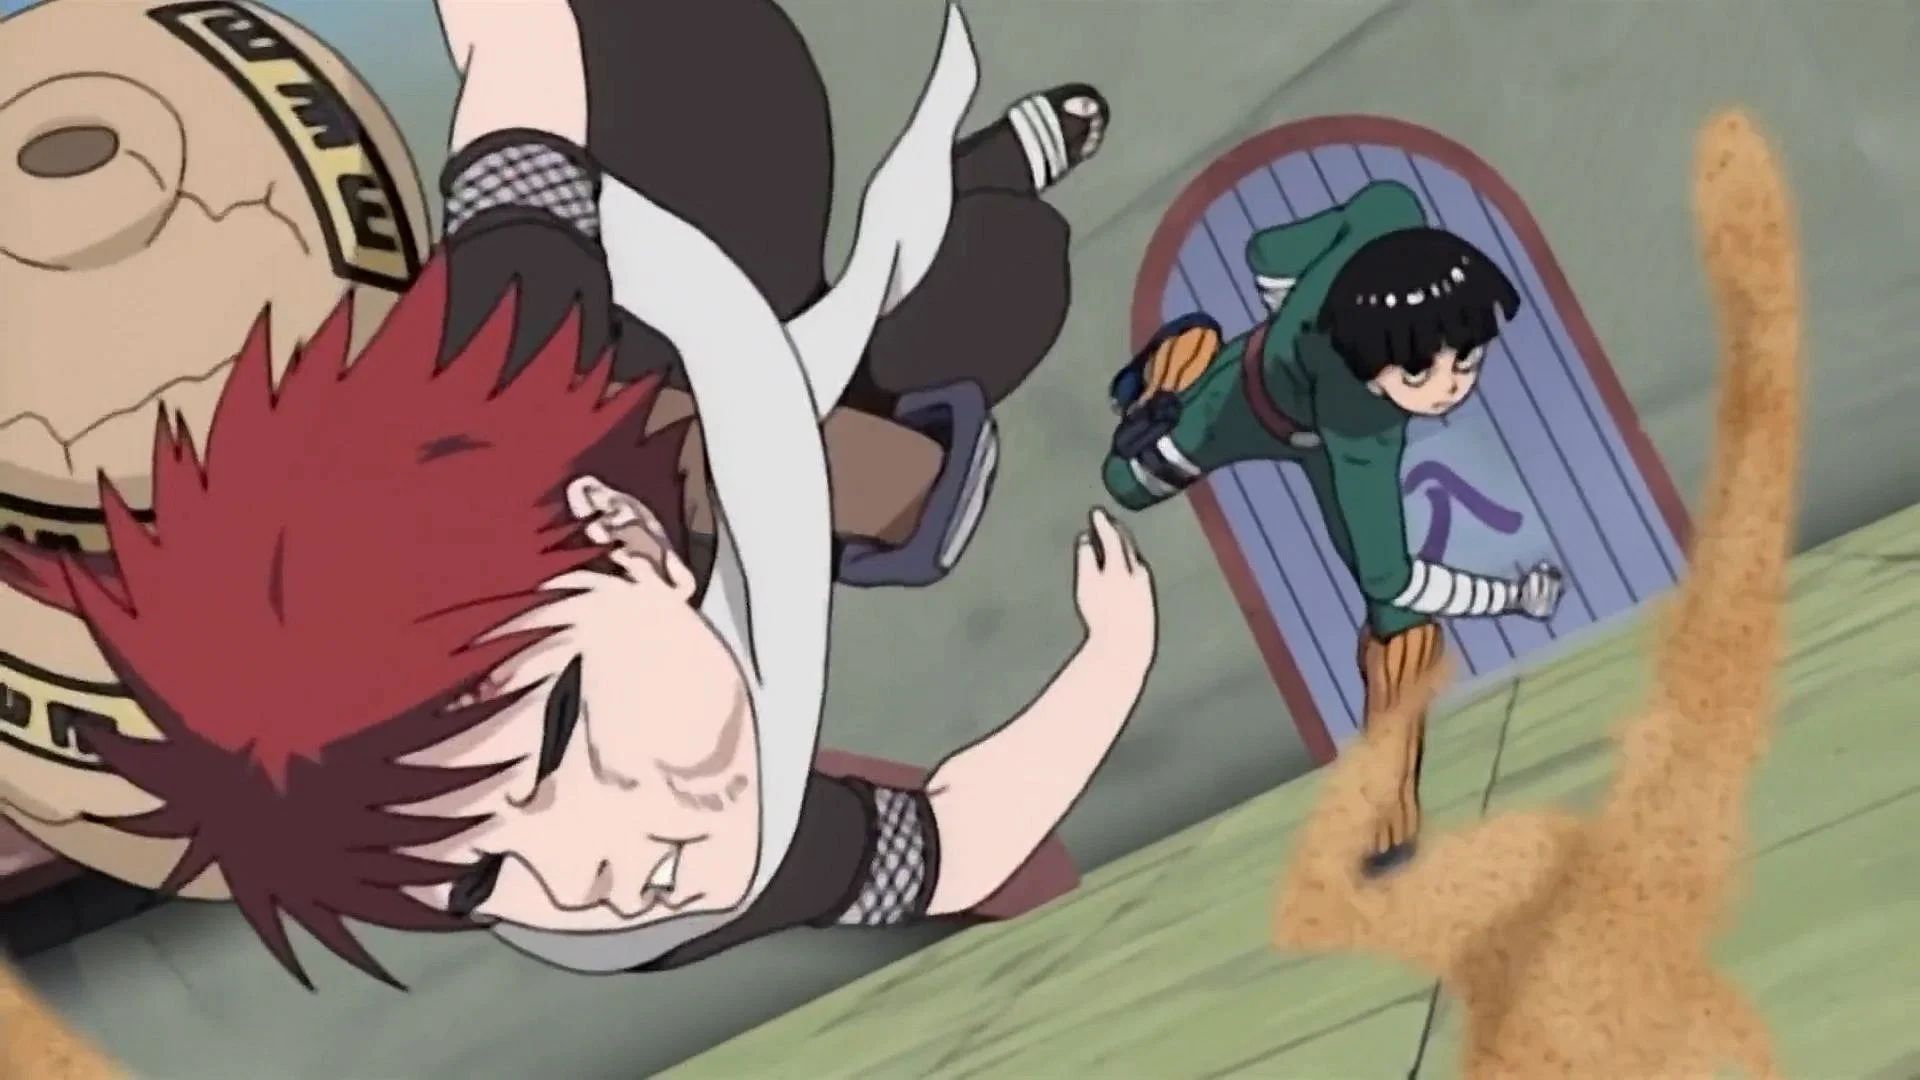 Rock Lee vs Gaara in Naruto (image via Studio Pierrot)